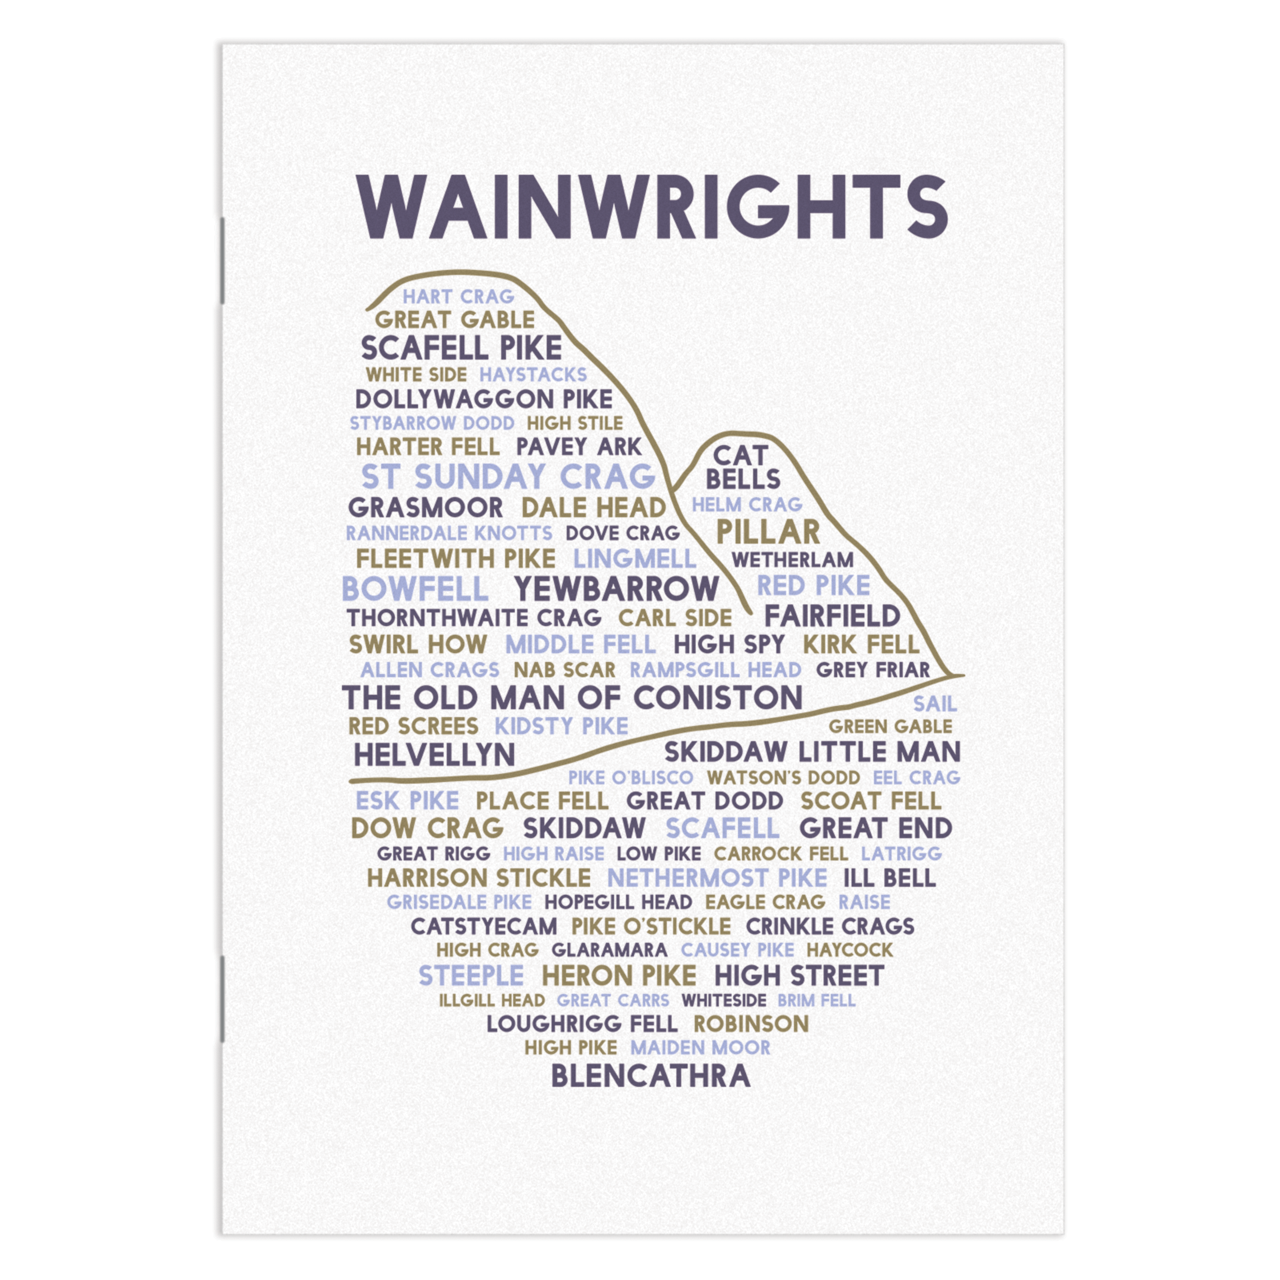 Wainwrights notebook